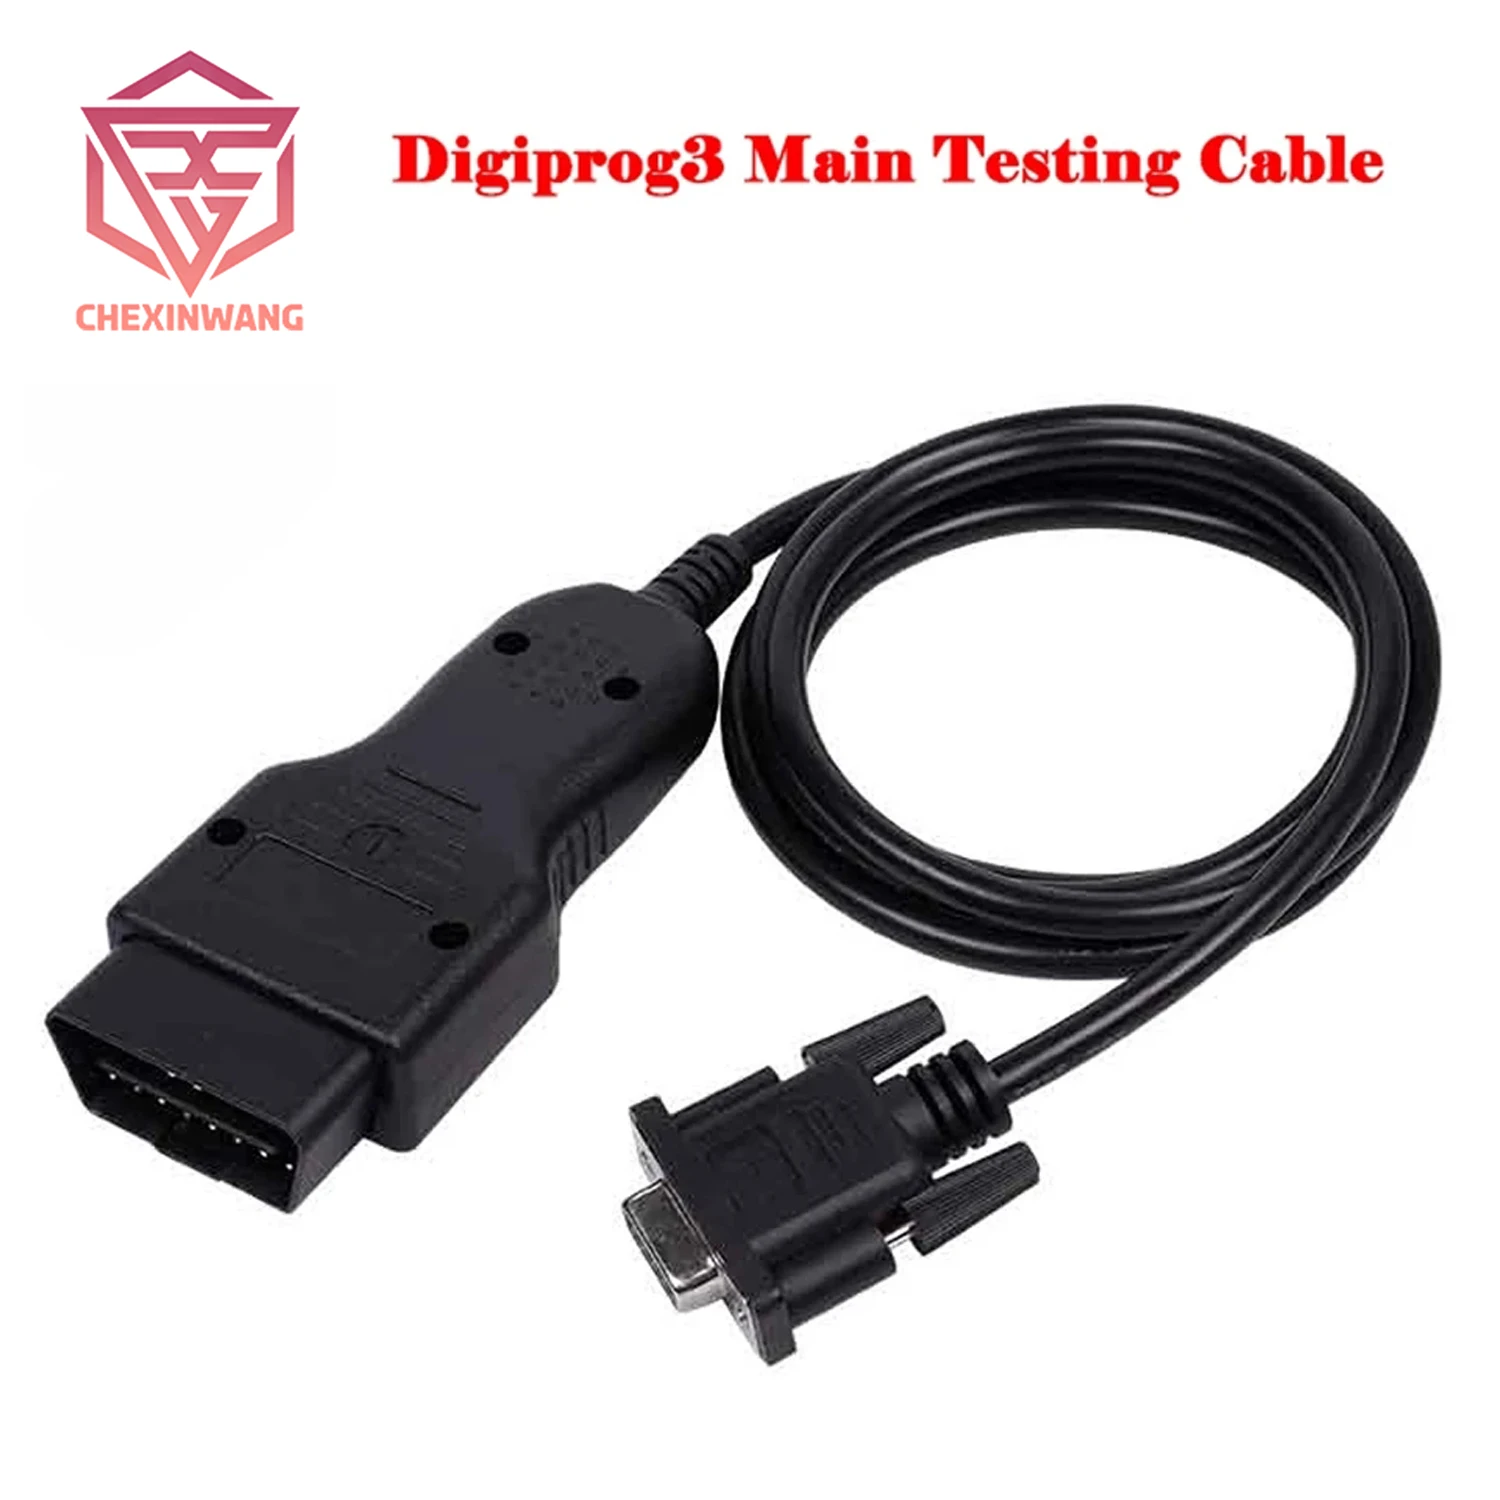 

Digiprog3 Main Testing Cable Digiprog III OBDII Cable digiprog 3 main cable